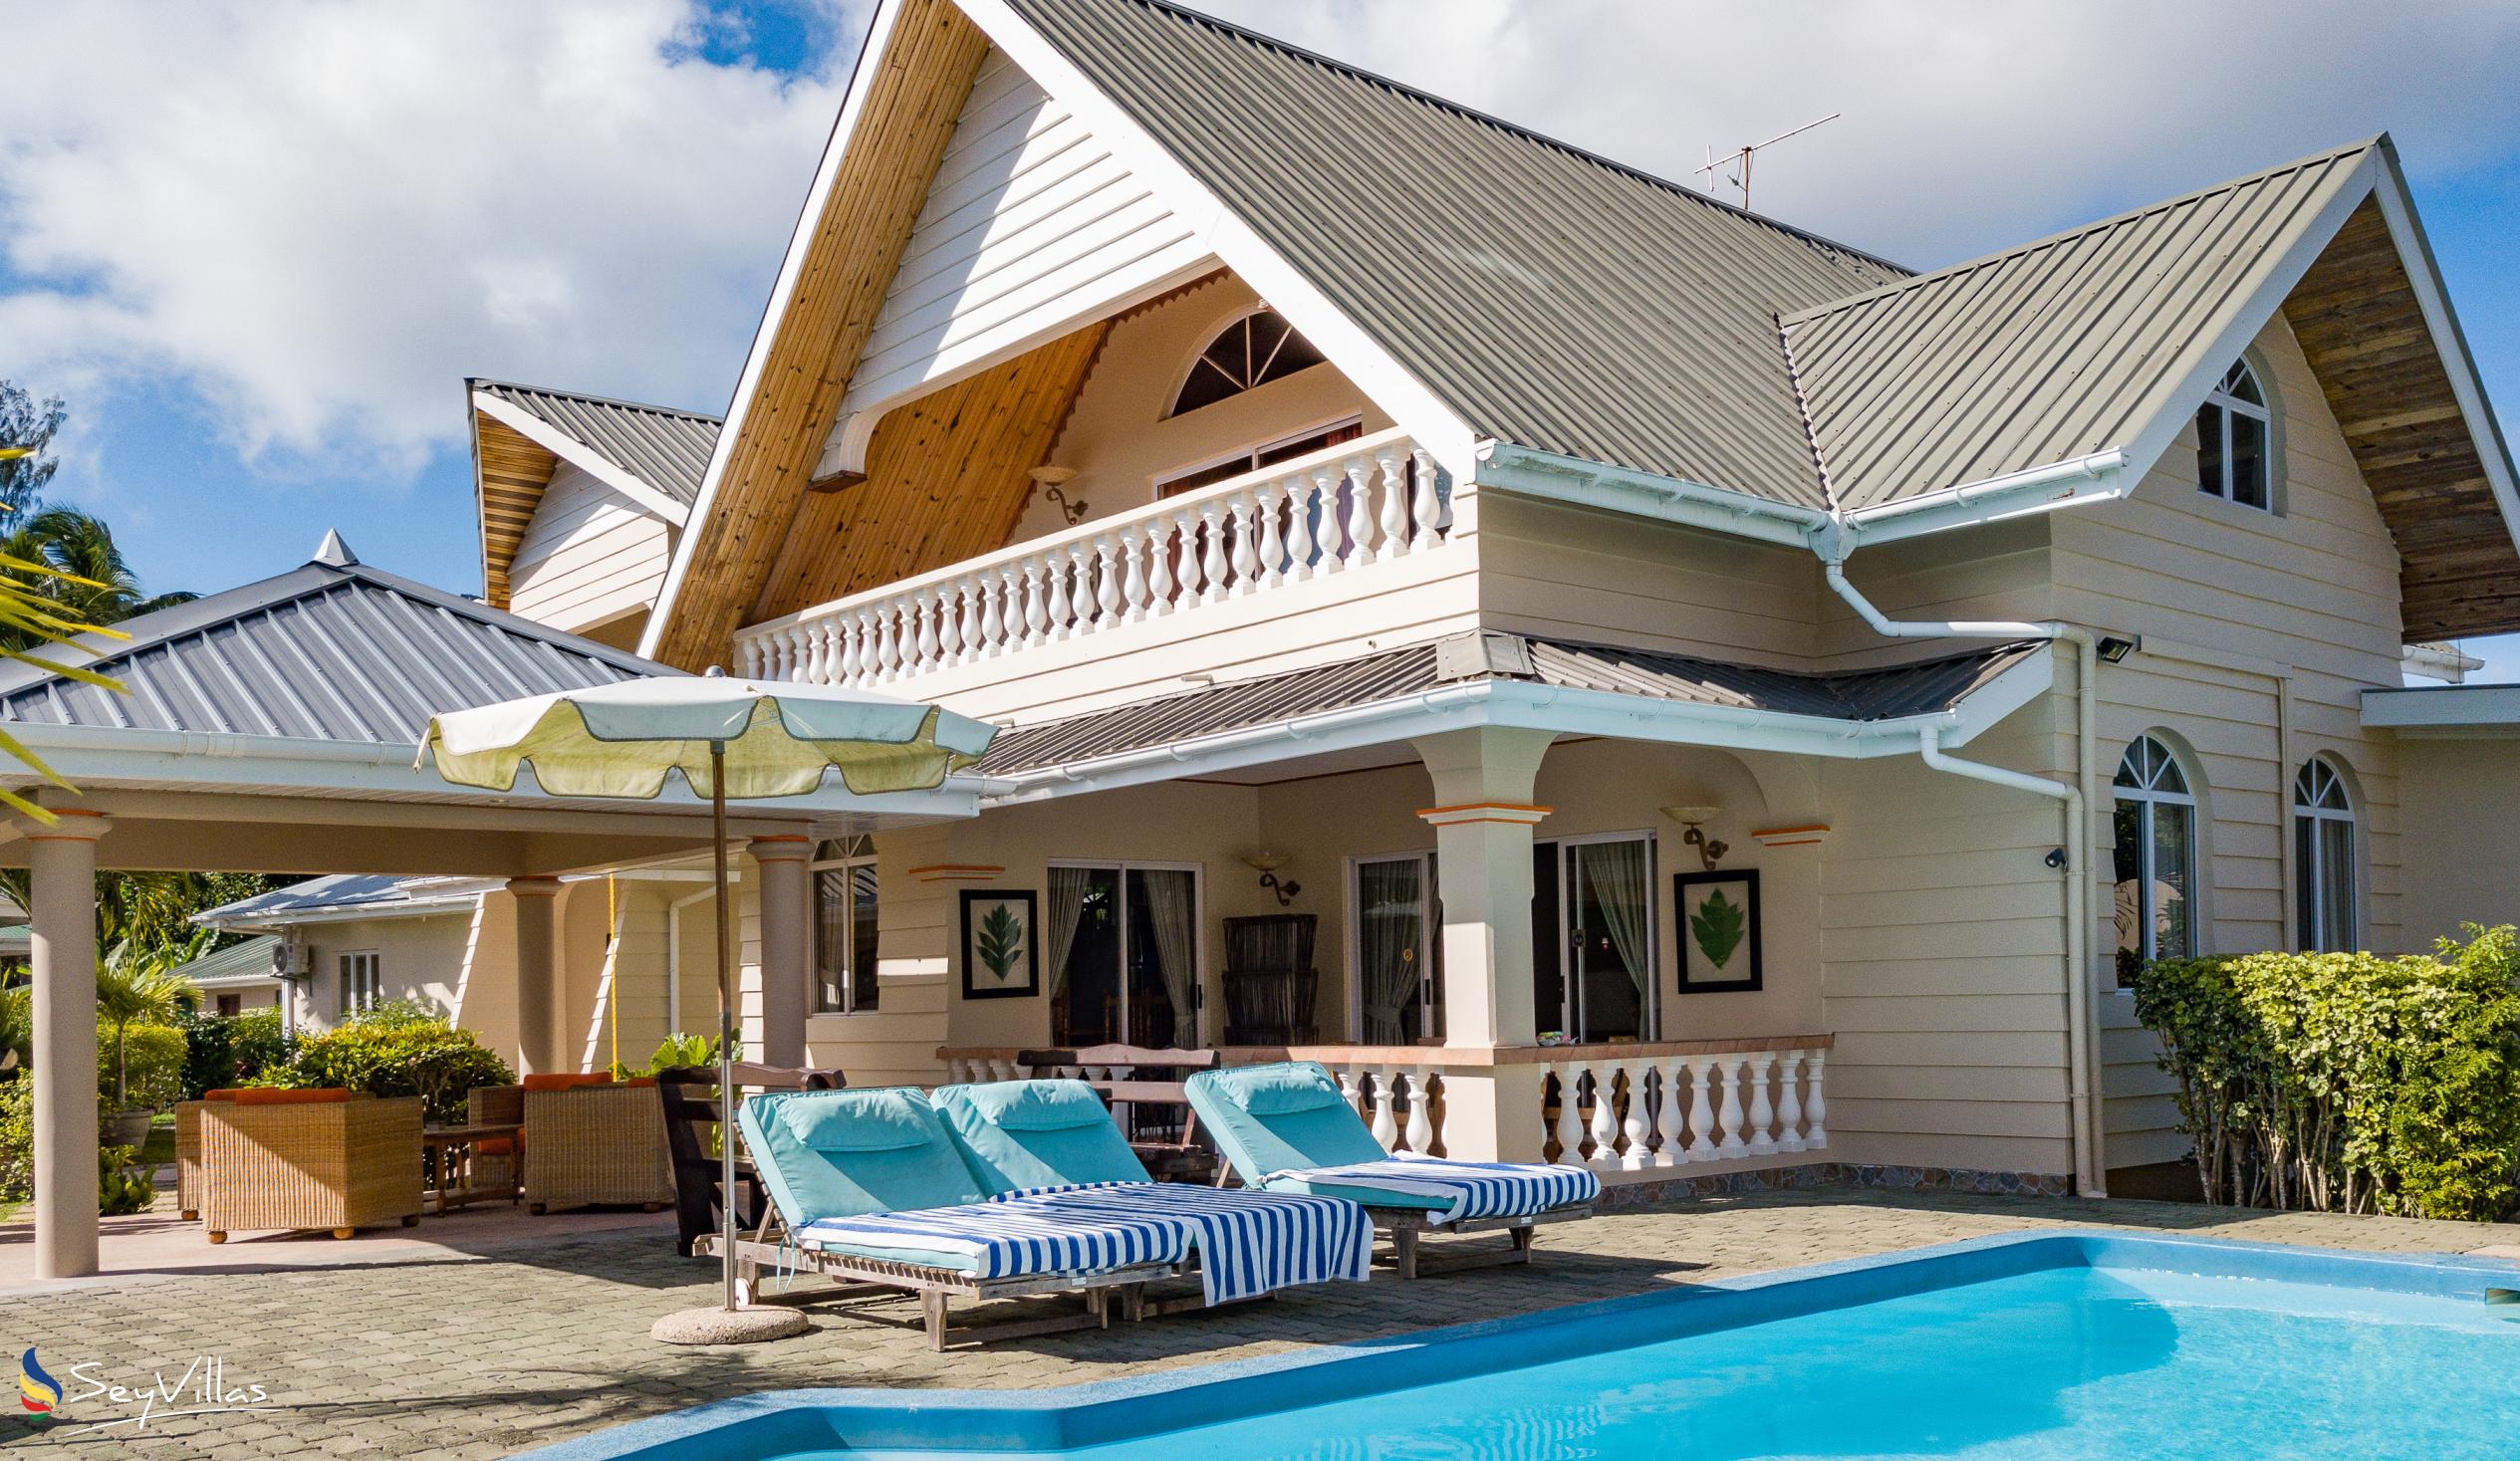 Foto 1: Villa Aya - Aussenbereich - Praslin (Seychellen)